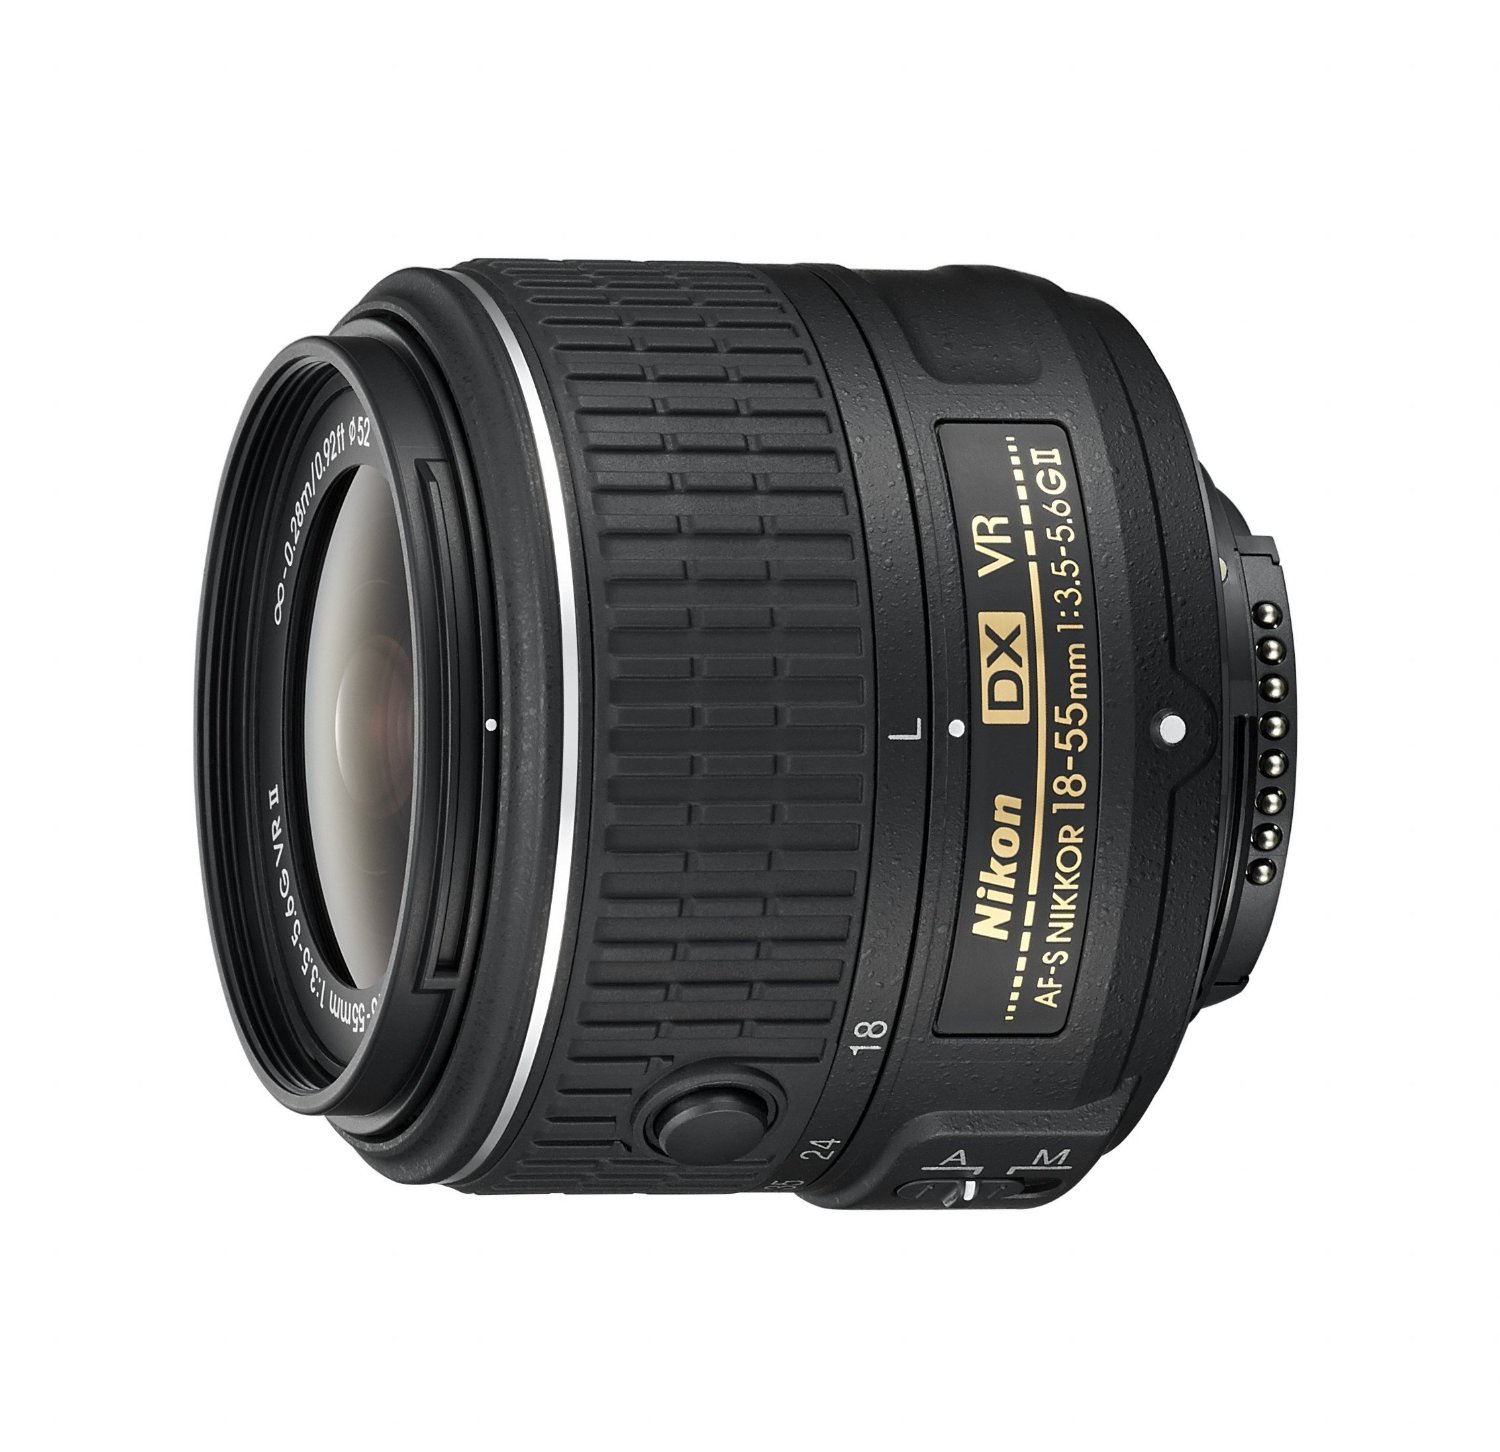 Nikon AF-S DX NIKKOR 18-55mm f / 3.5-5.6G Vibration Reduction II зум-объектив с автофокусом для цифровых зеркальных фотоаппаратов